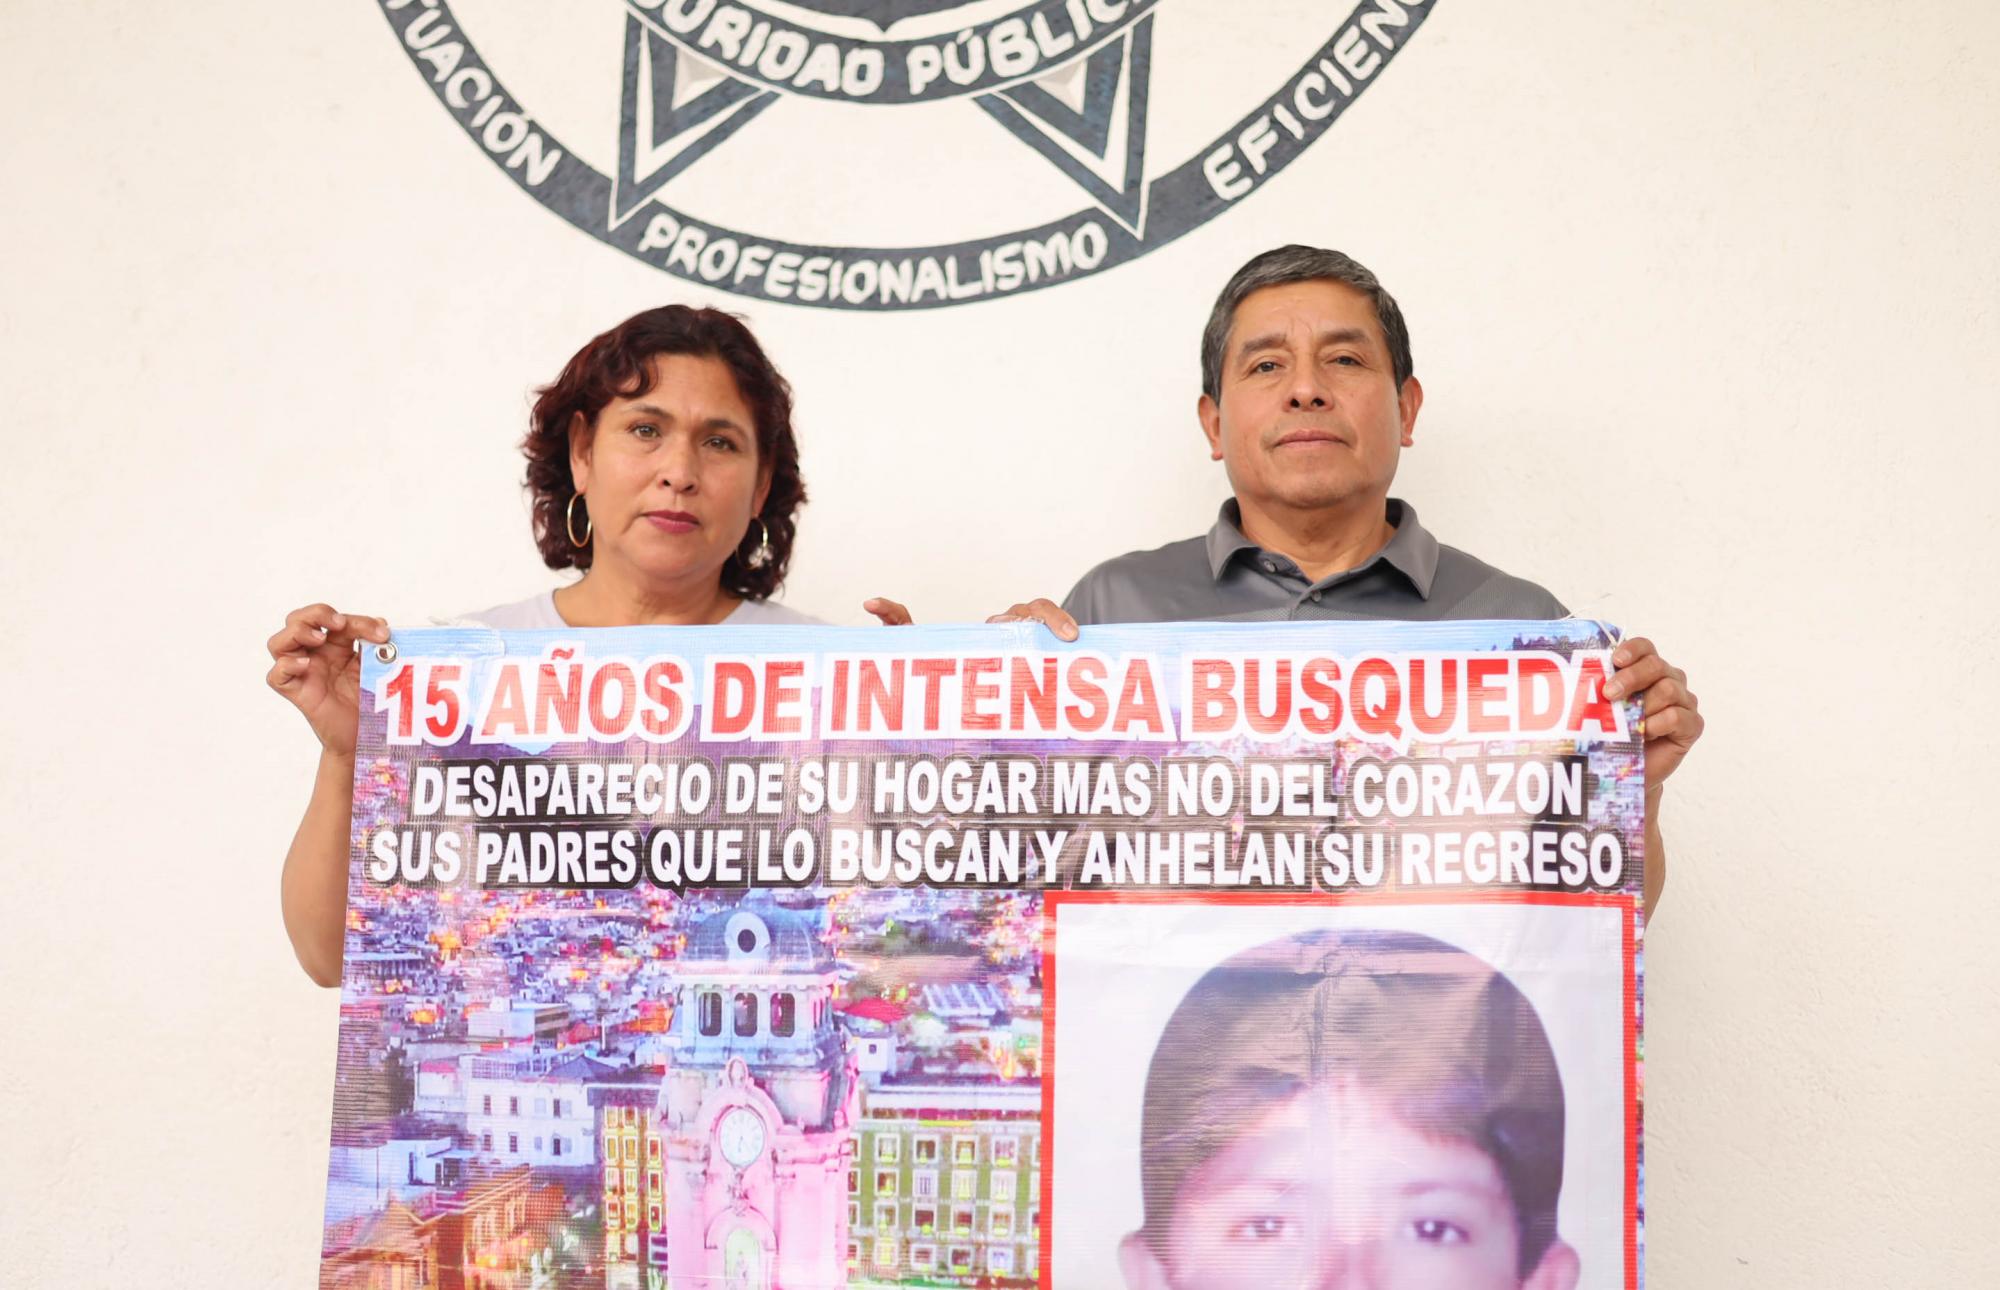 $!La pareja formada por Cándido de la Cruz y Goyita, quienes buscan a su hijo Gustavo Alberto, desaparecido en Pachuca en 2007.